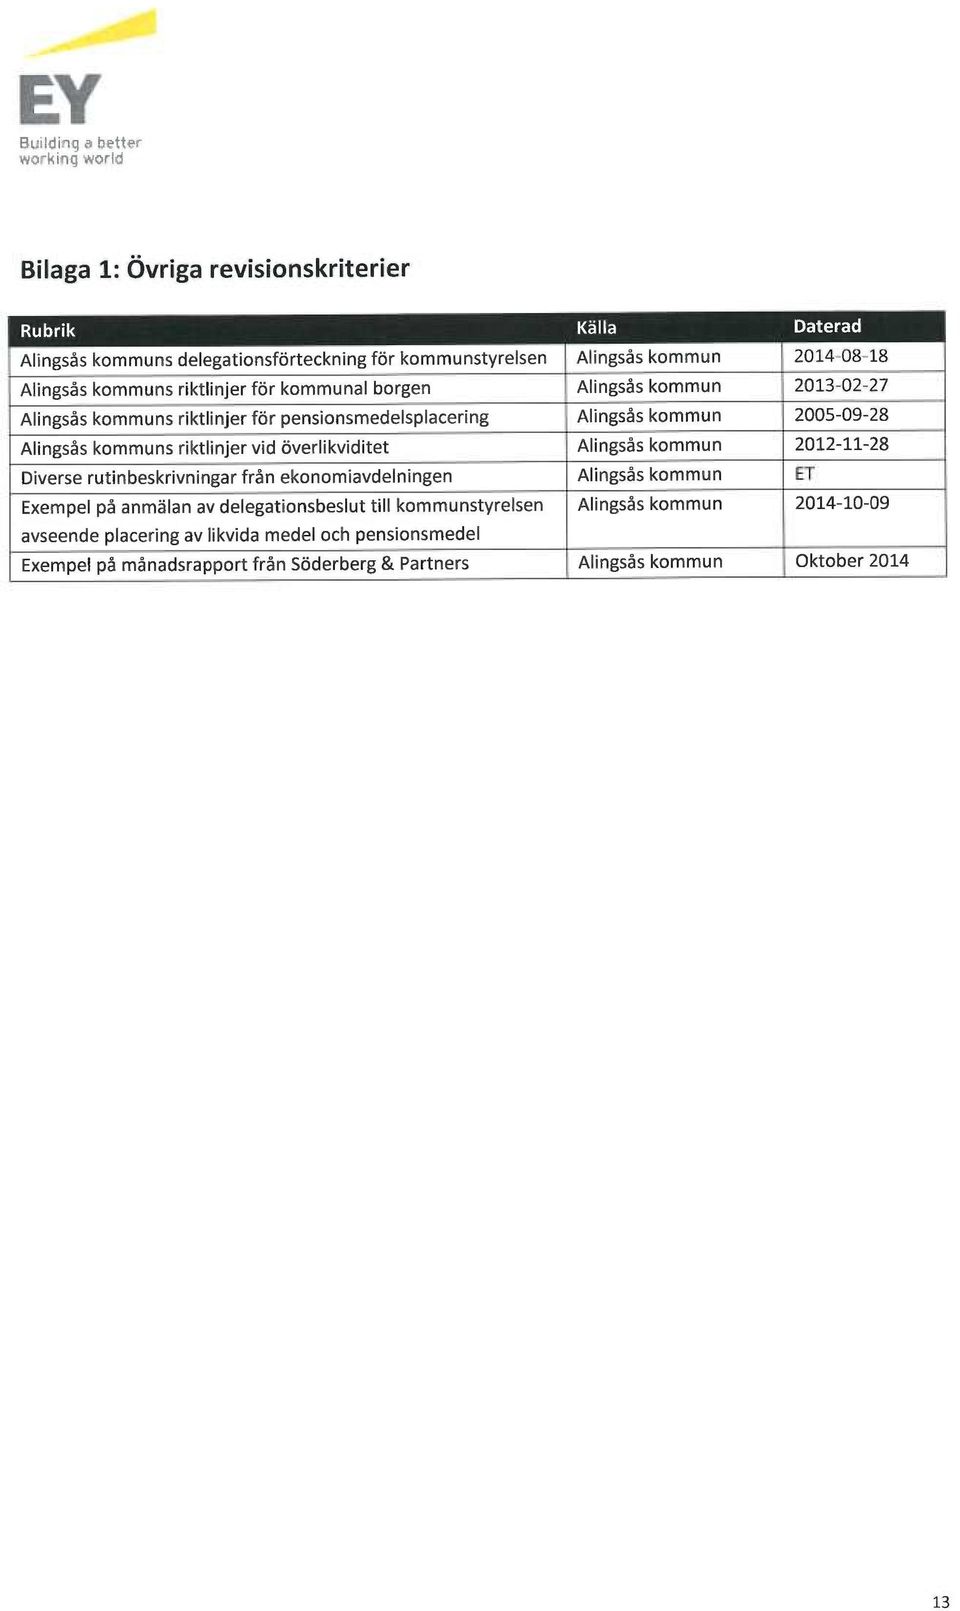 riktlinjer vid överlikviditet Alingsås kommun 2012-11-28 Diverse rutinbeskrivningar från ekonomiavdelningen Alingsås kommun ET Exempel på anmälan av delegationsbeslut